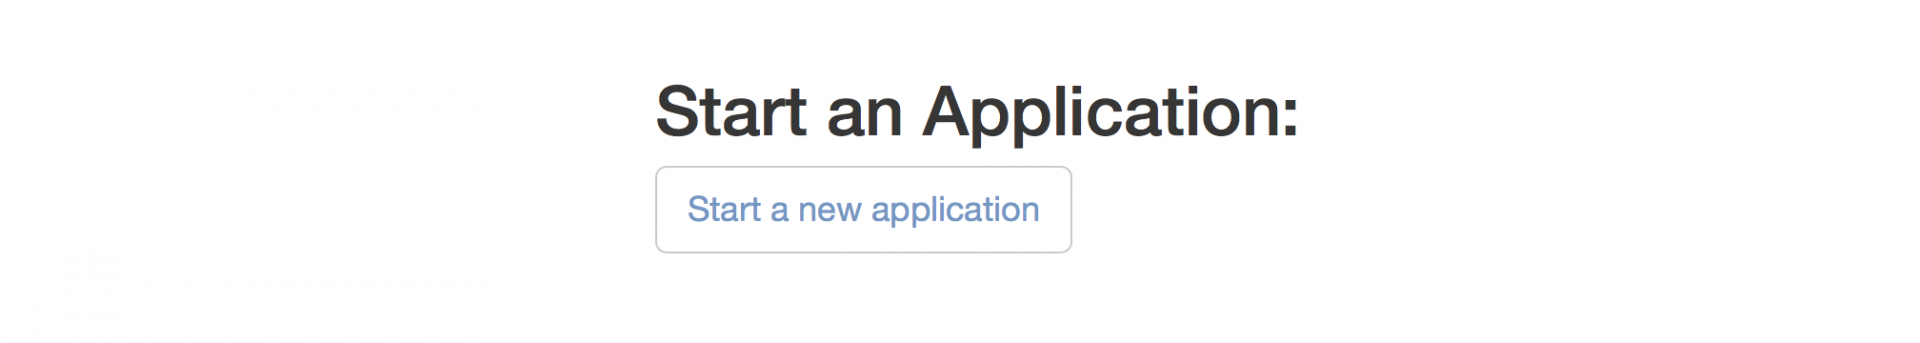 Start a New Application Button